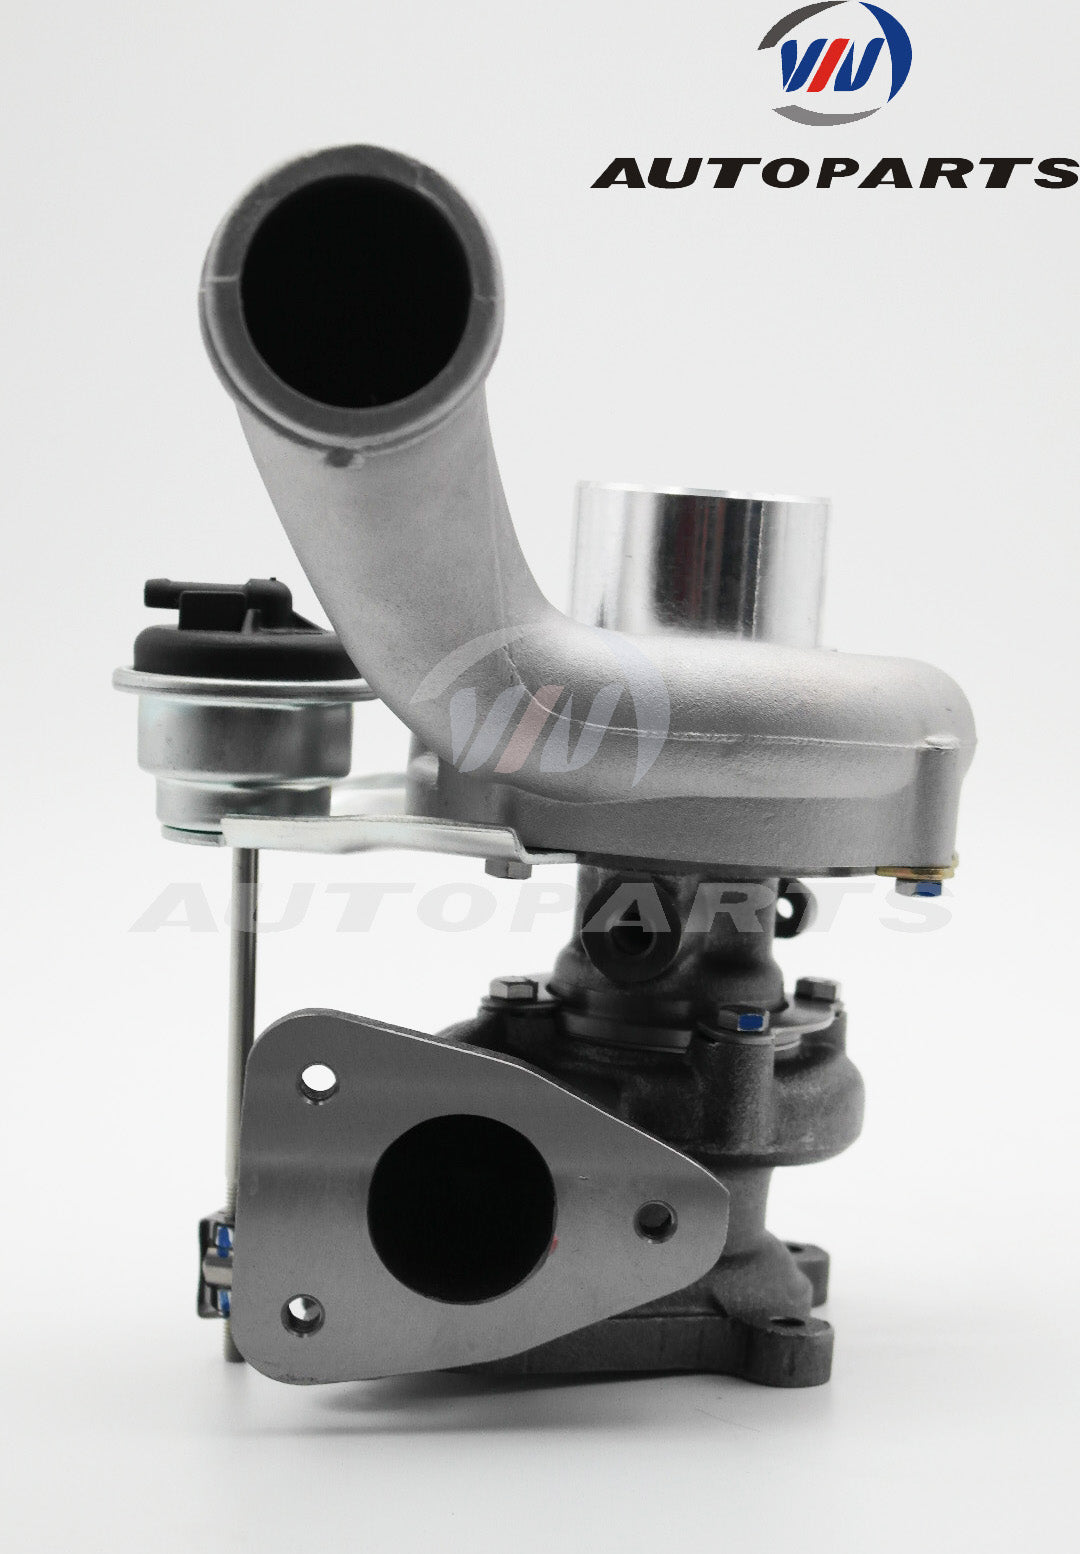 Turbocharger 53039880055 for Opel Renault varies 2.5L Diesel Engine